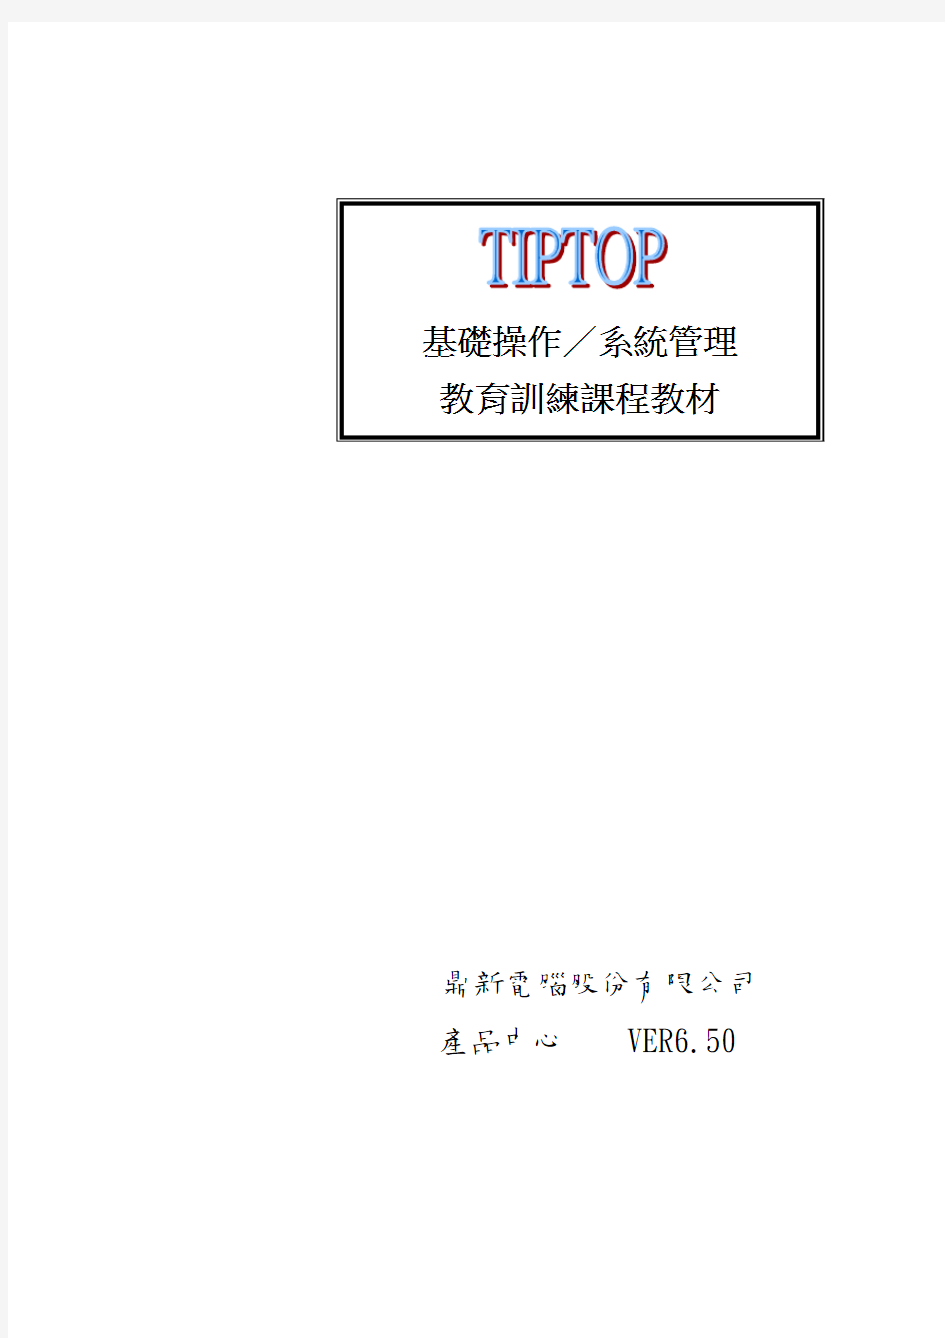 tiptop系统应用-01基础操作管理系统